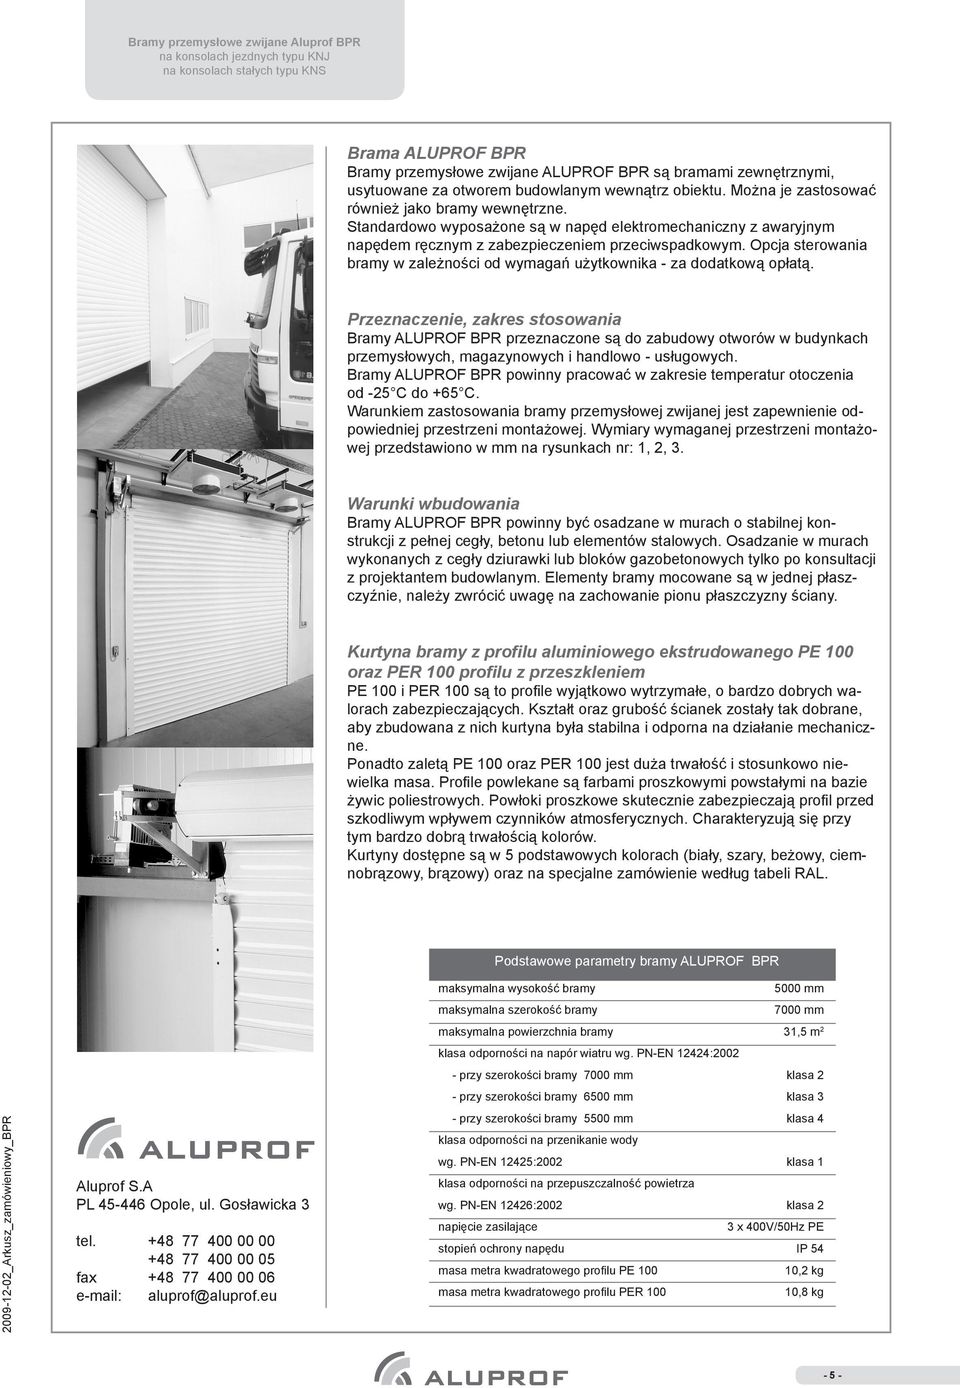 Przeznaczenie, zakres stosowania Bramy ALUPROF BPR przeznaczone są do zabudowy otworów w budynkach przemysłowych, magazynowych i handlowo - usługowych.